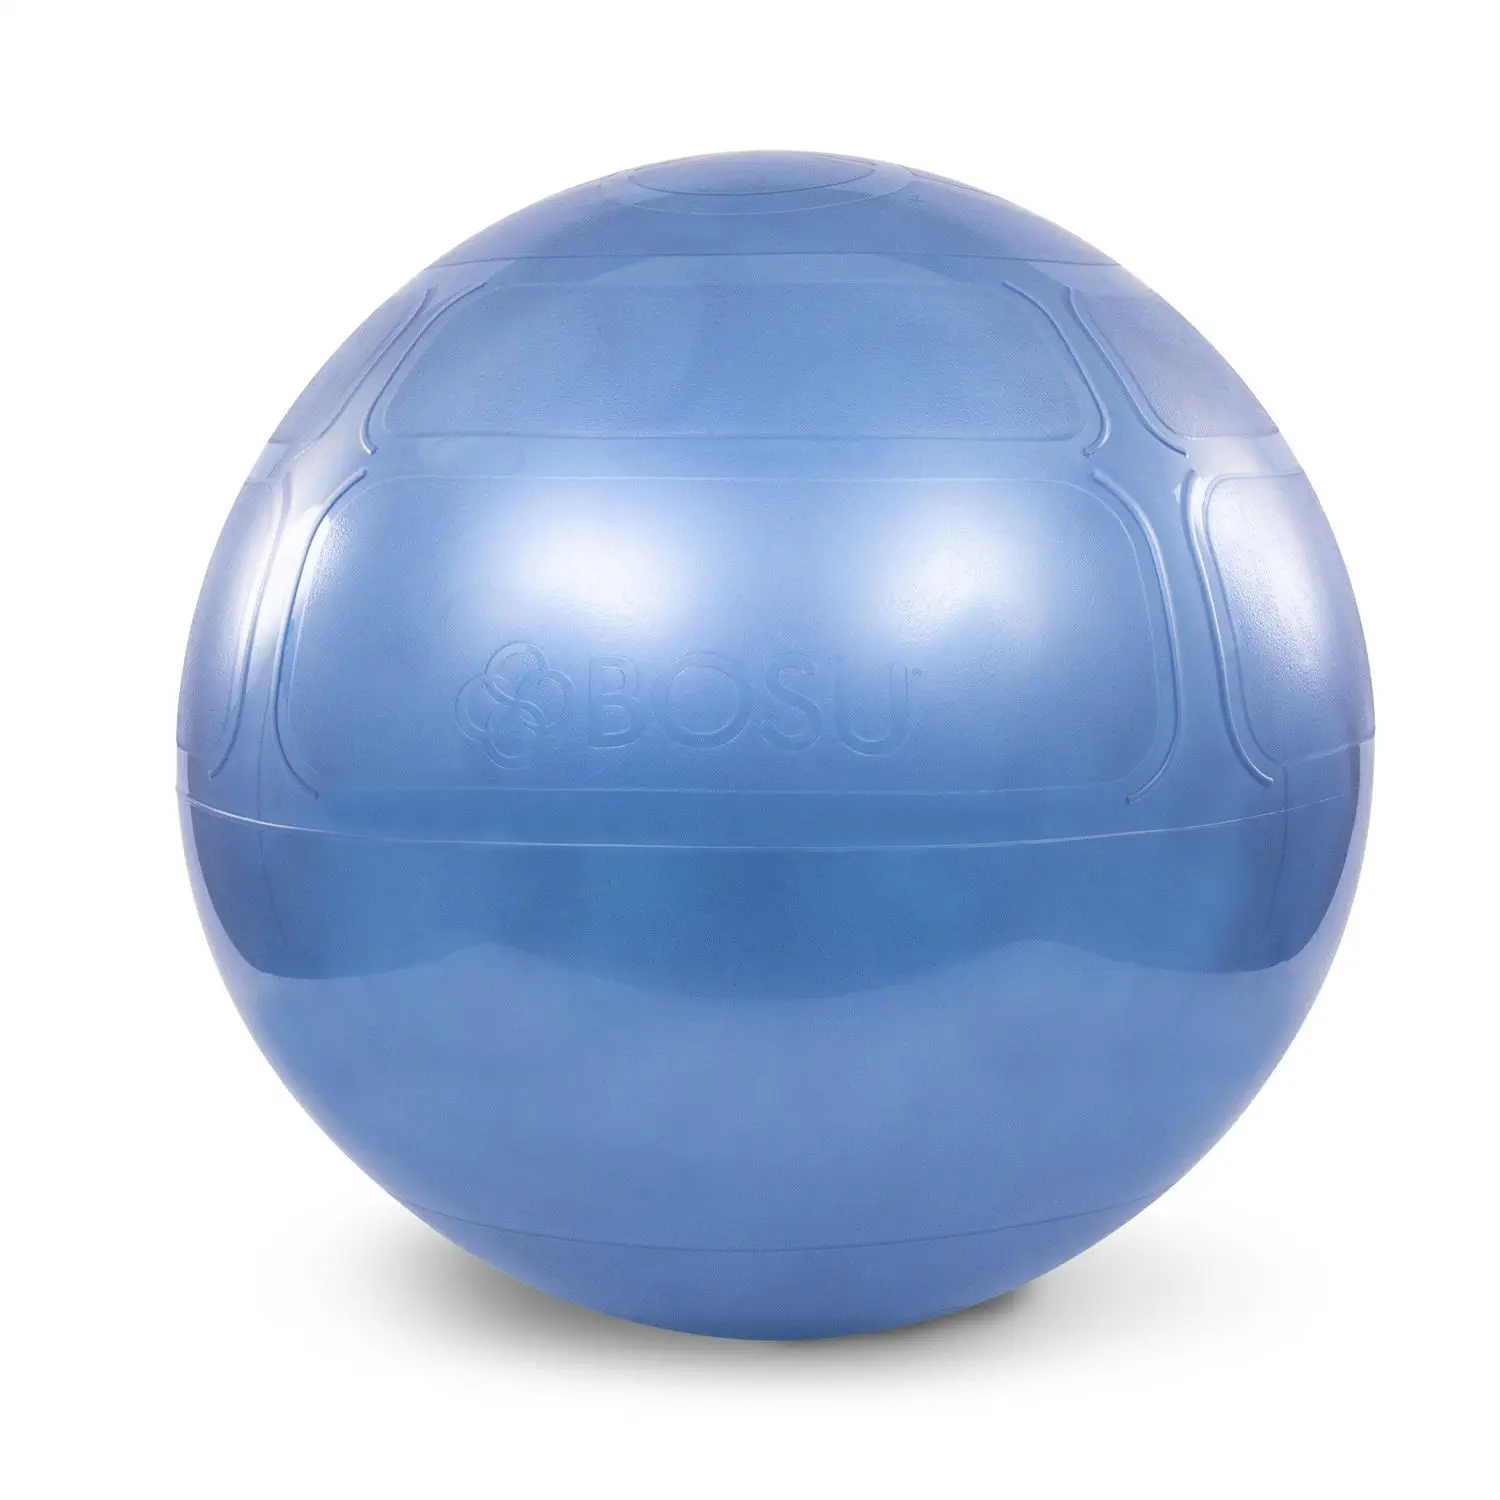 พิลาทิสบอล Large size Pilates ball BOSU